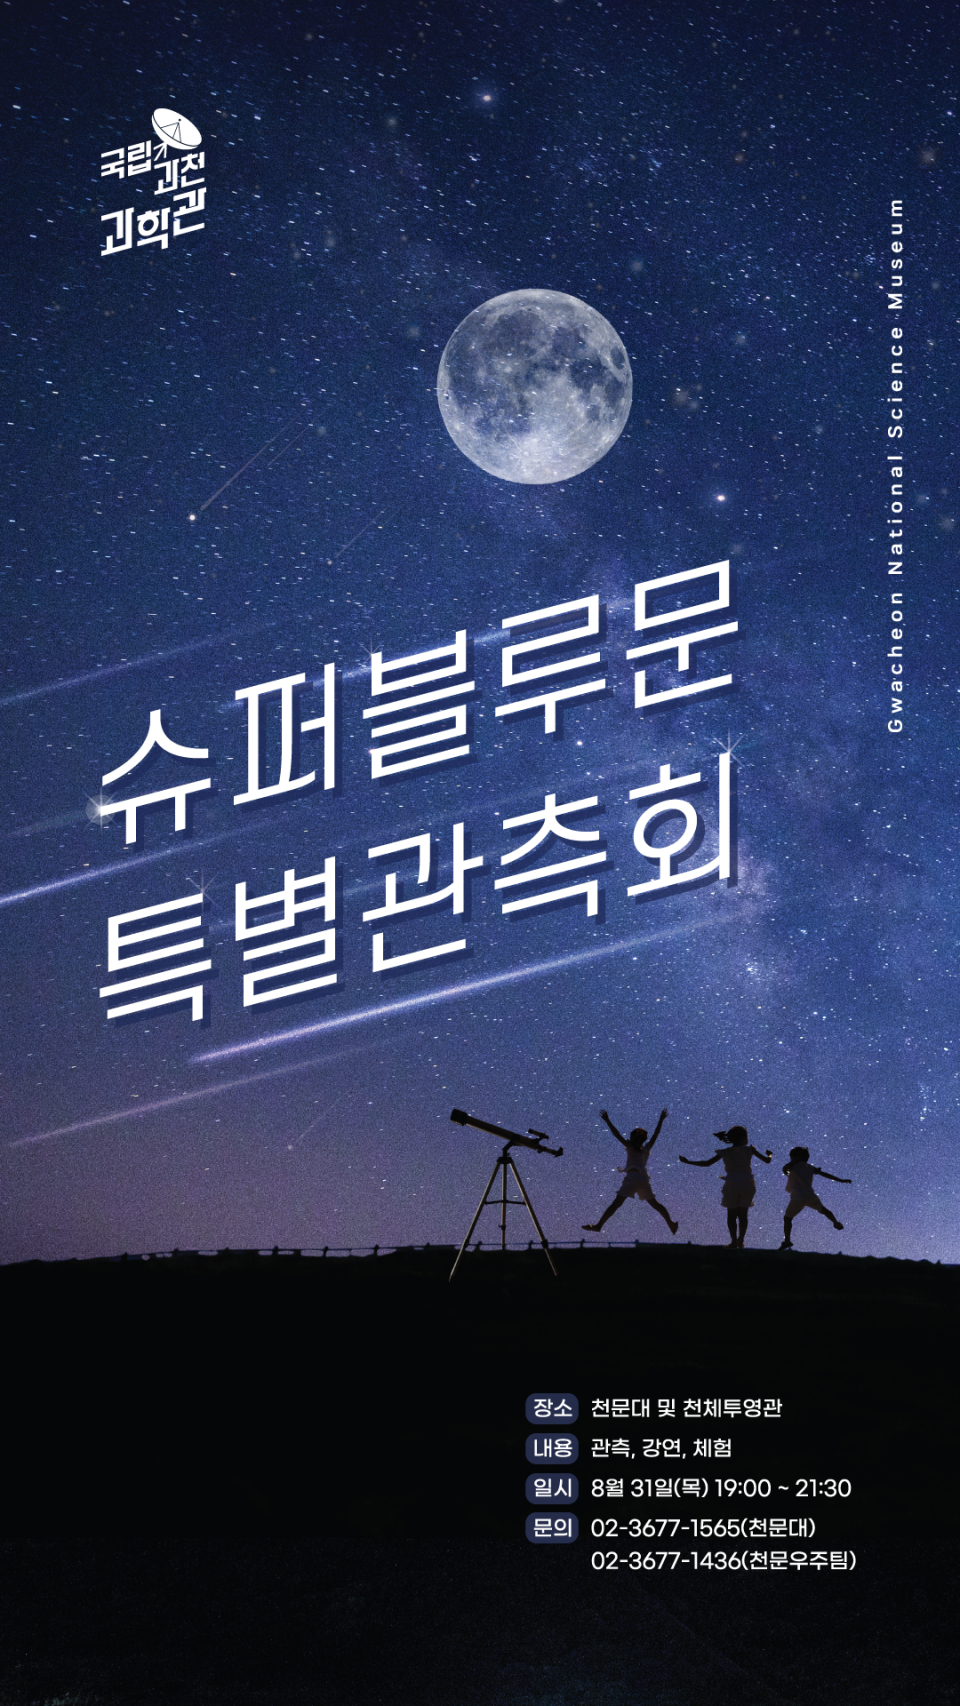 국립과천과학관, 슈퍼블루문 특별관측회 개최